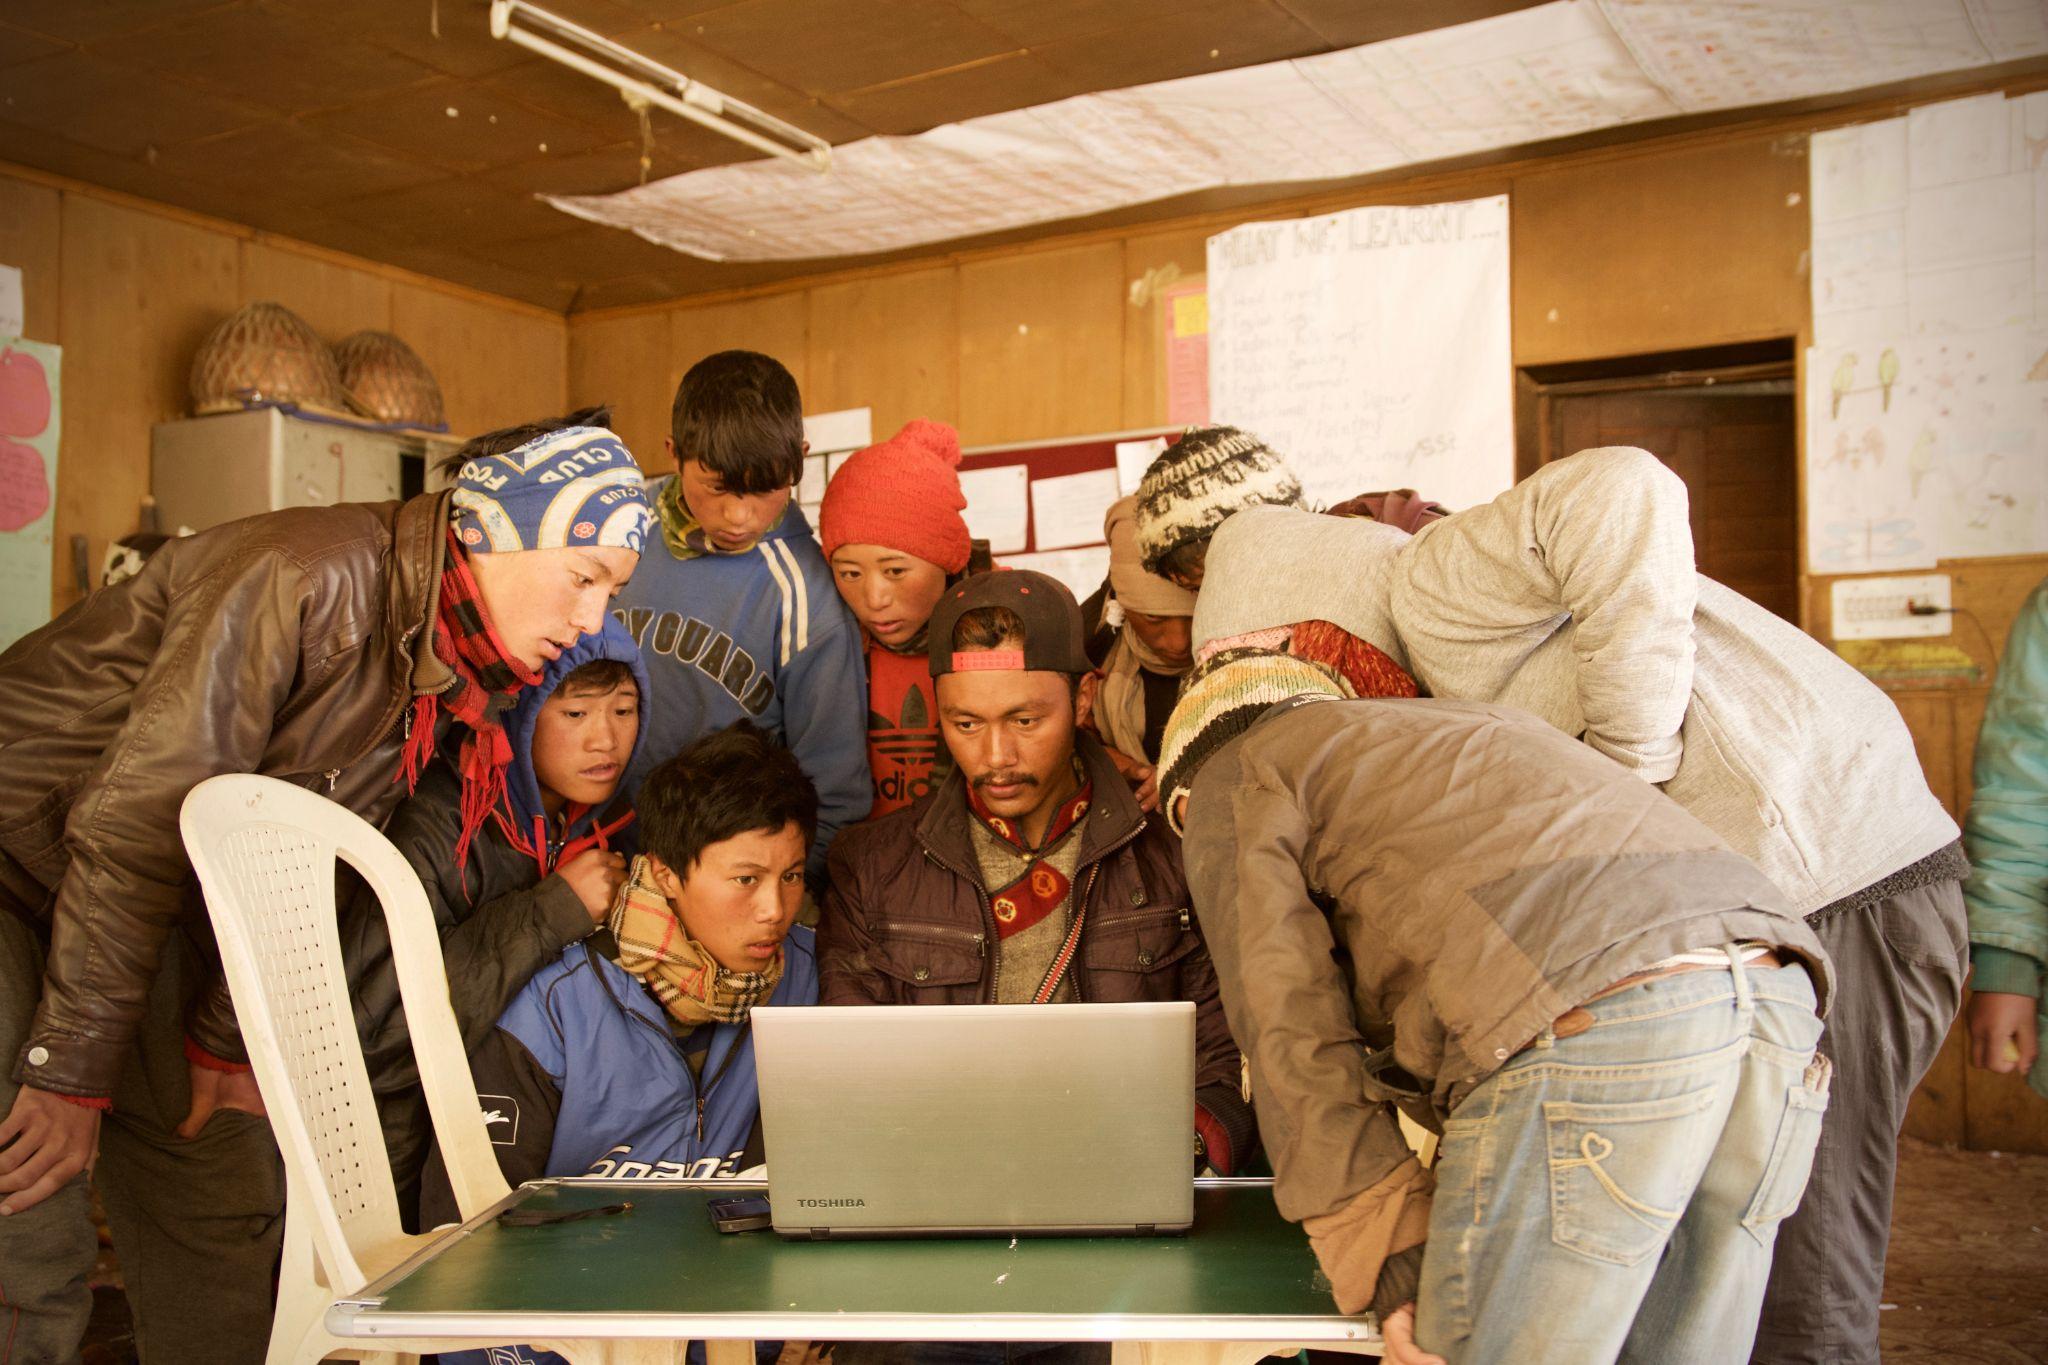 人们聚在一台笔记本电脑旁，站在一张简单的桌子上，左边有一把塑料椅子。背景看起来像是发展中国家/地区的一所学校。